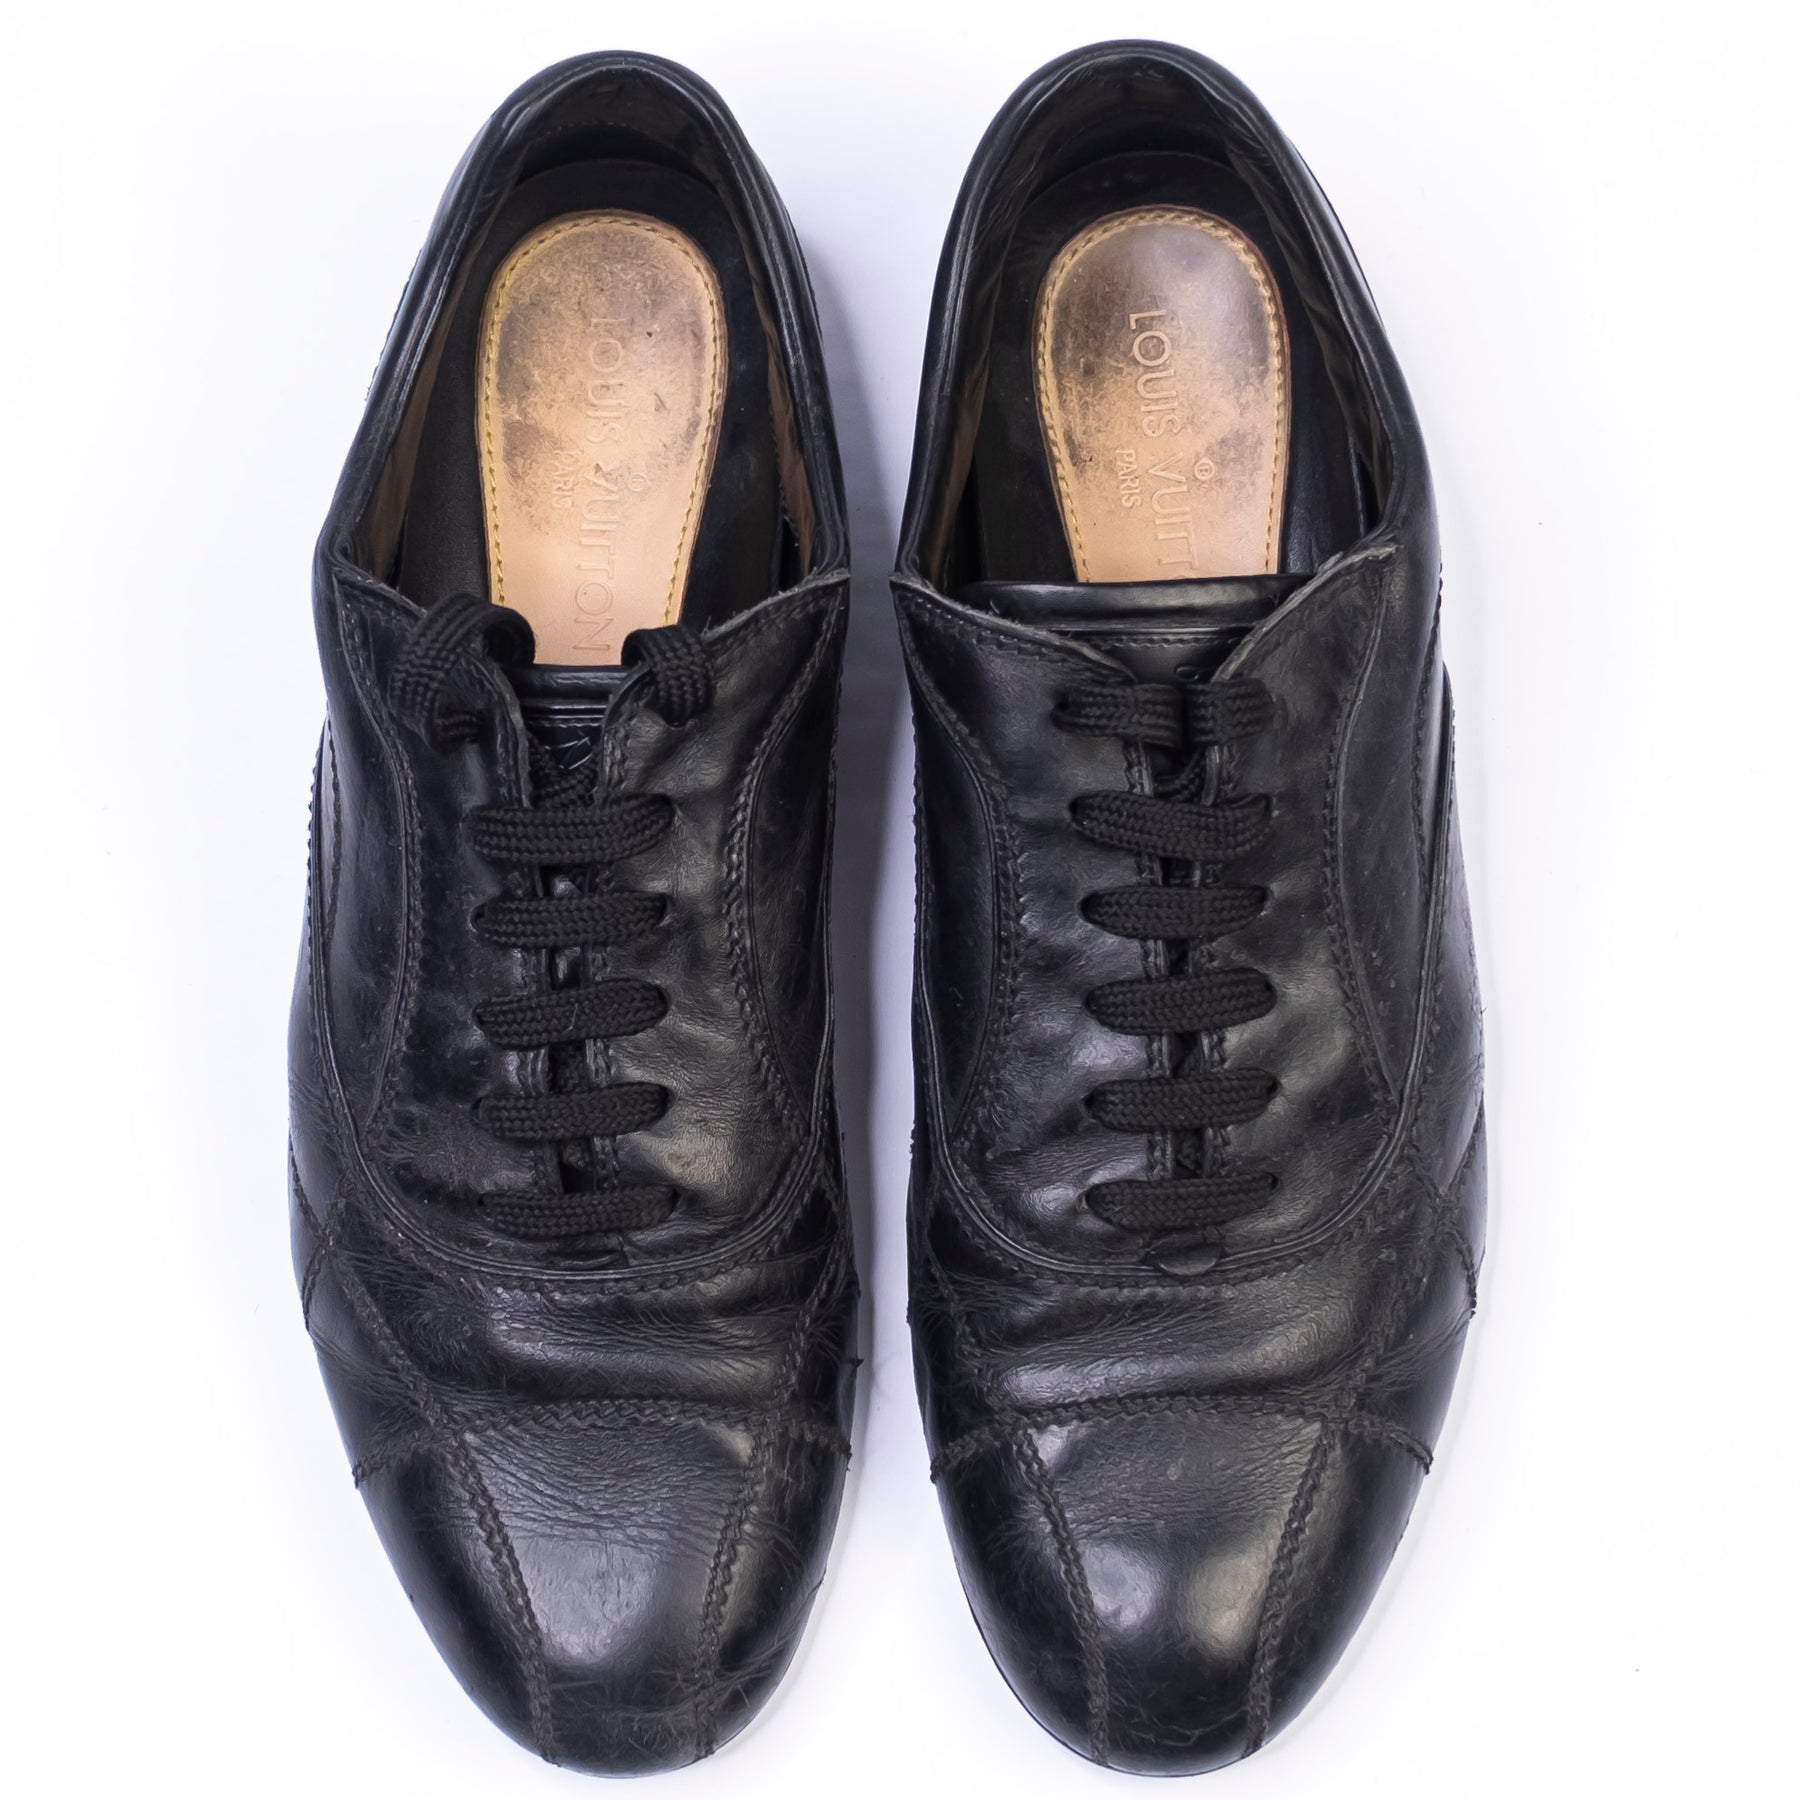 Vintage Louis Vuitton Classic Shoes Size 8 12 Black Leather  Etsy